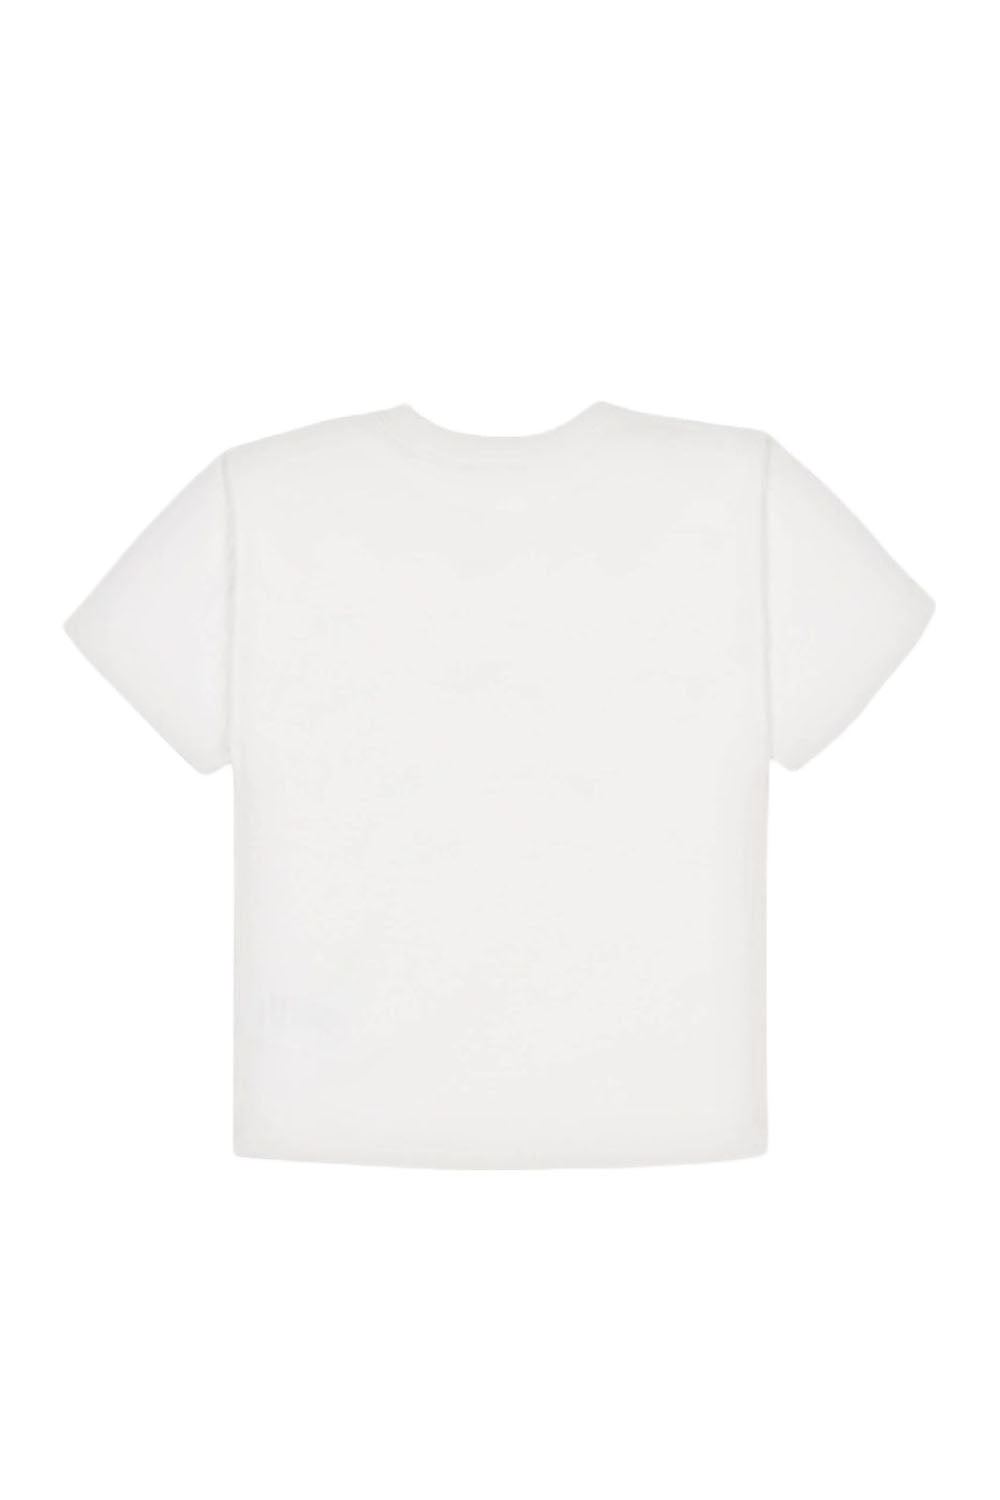 Teddy Stripe T Shirt for Boys